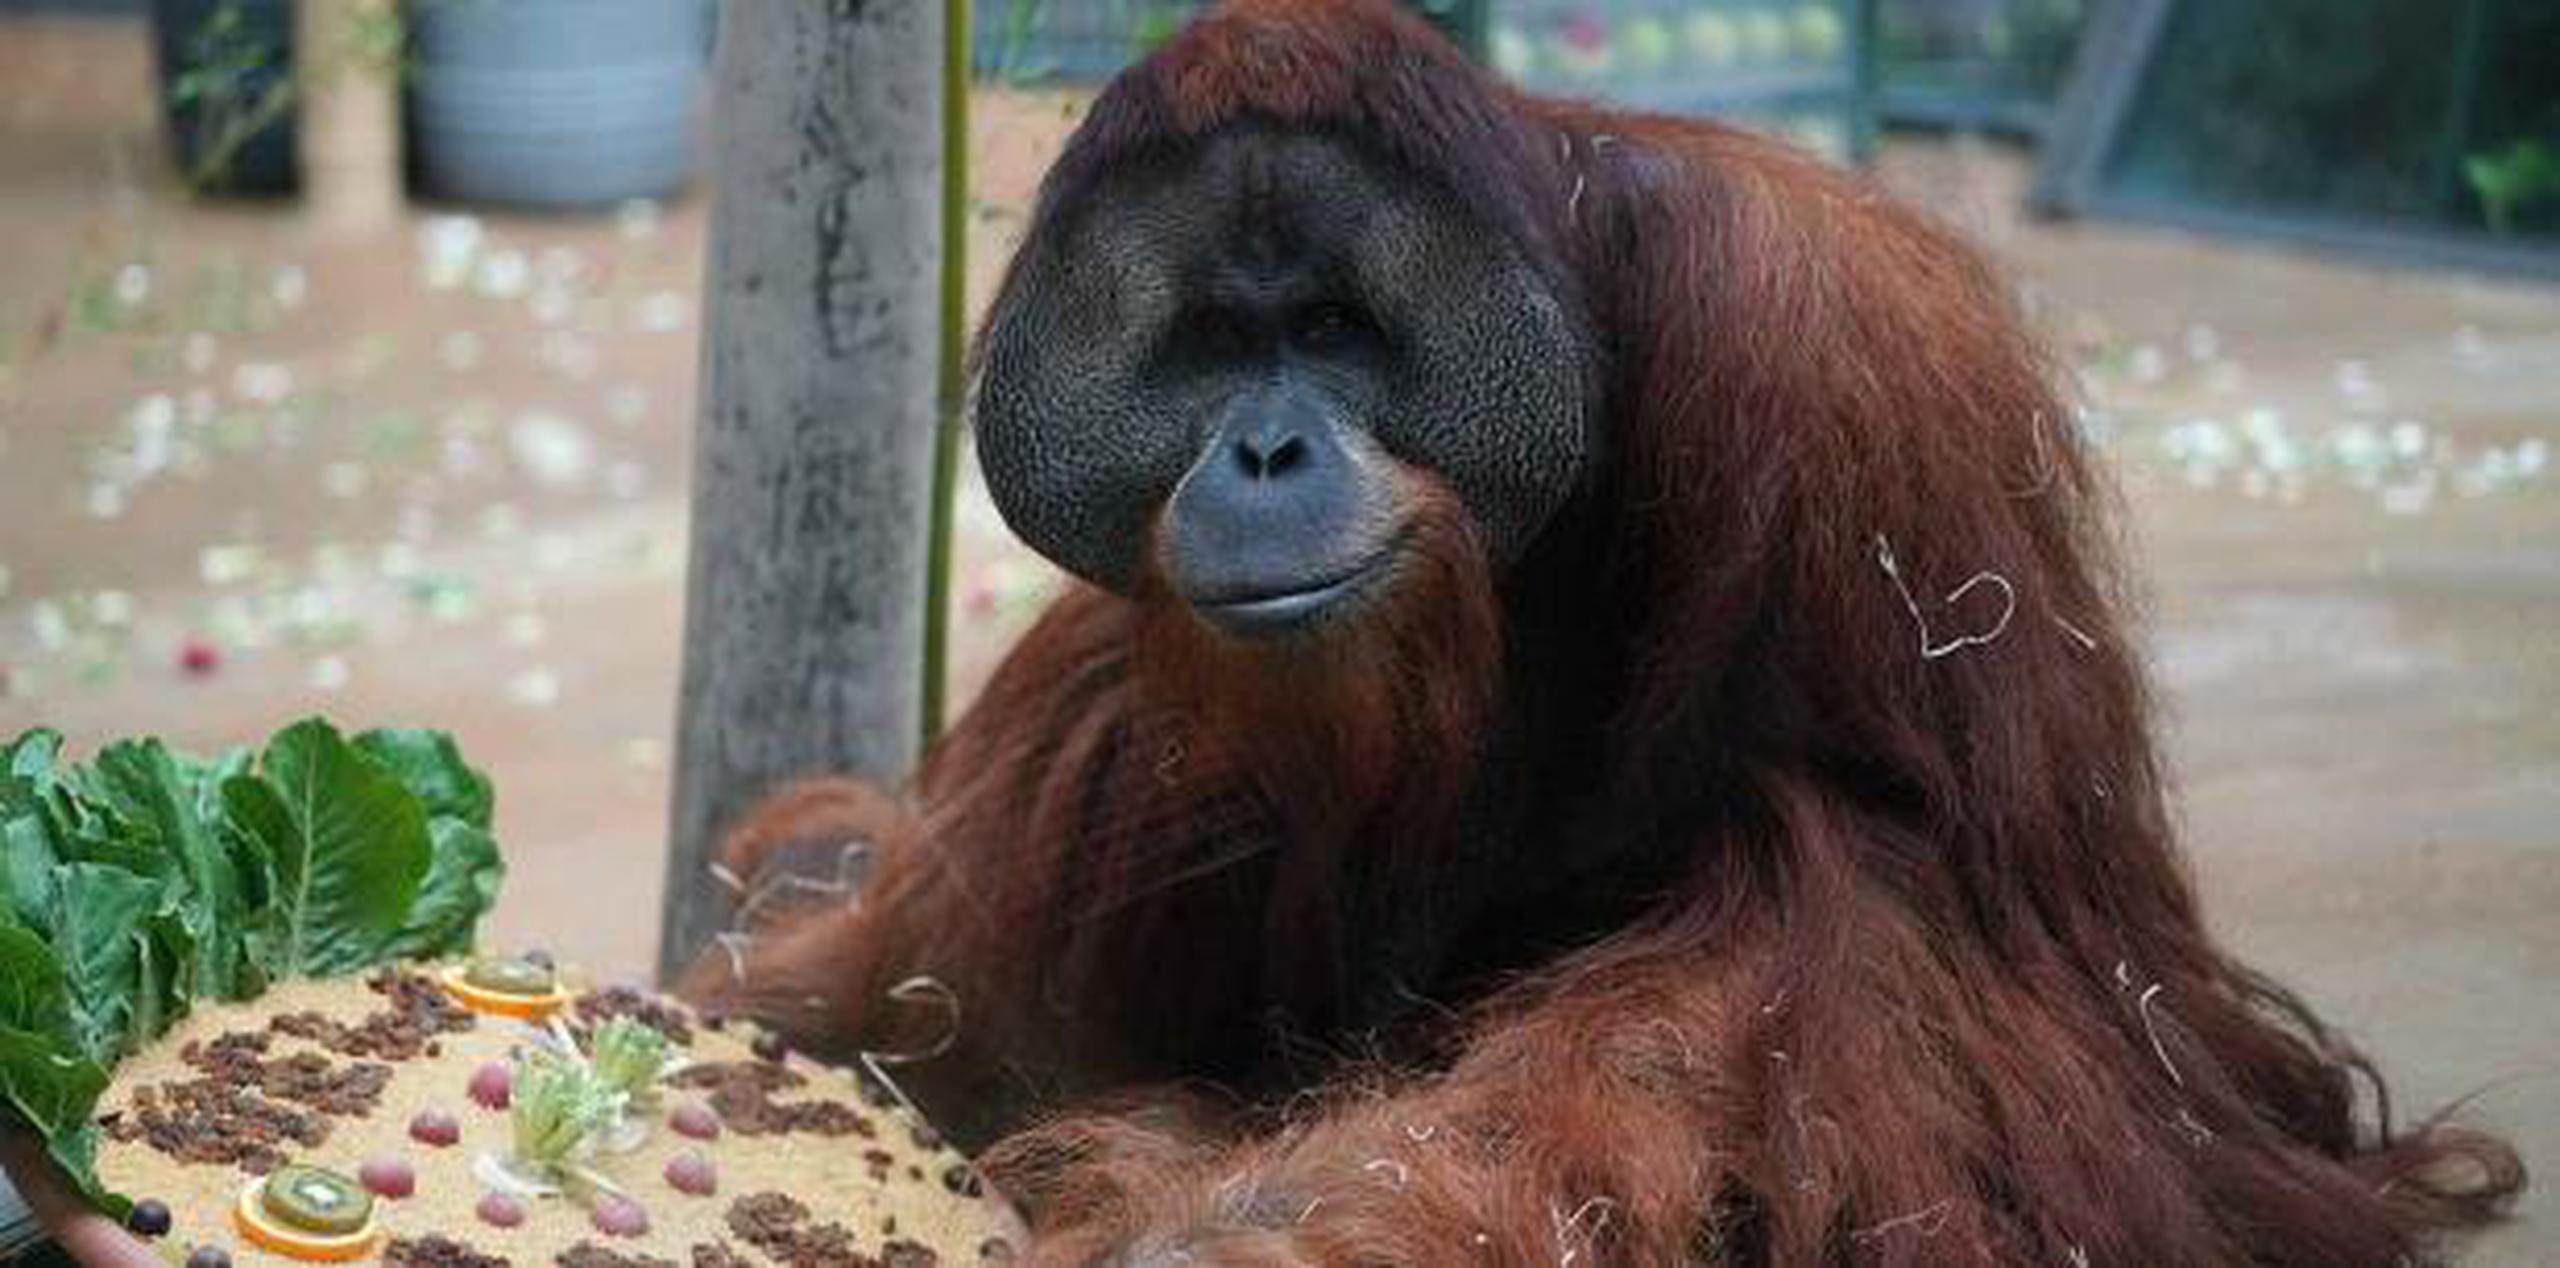 La población de orangutanes se ha reducido drásticamente debido a la cacería y la destrucción de su hábitat por la tala ilegal y la transformación de las selvas en plantaciones de palma de aceite. (AP)